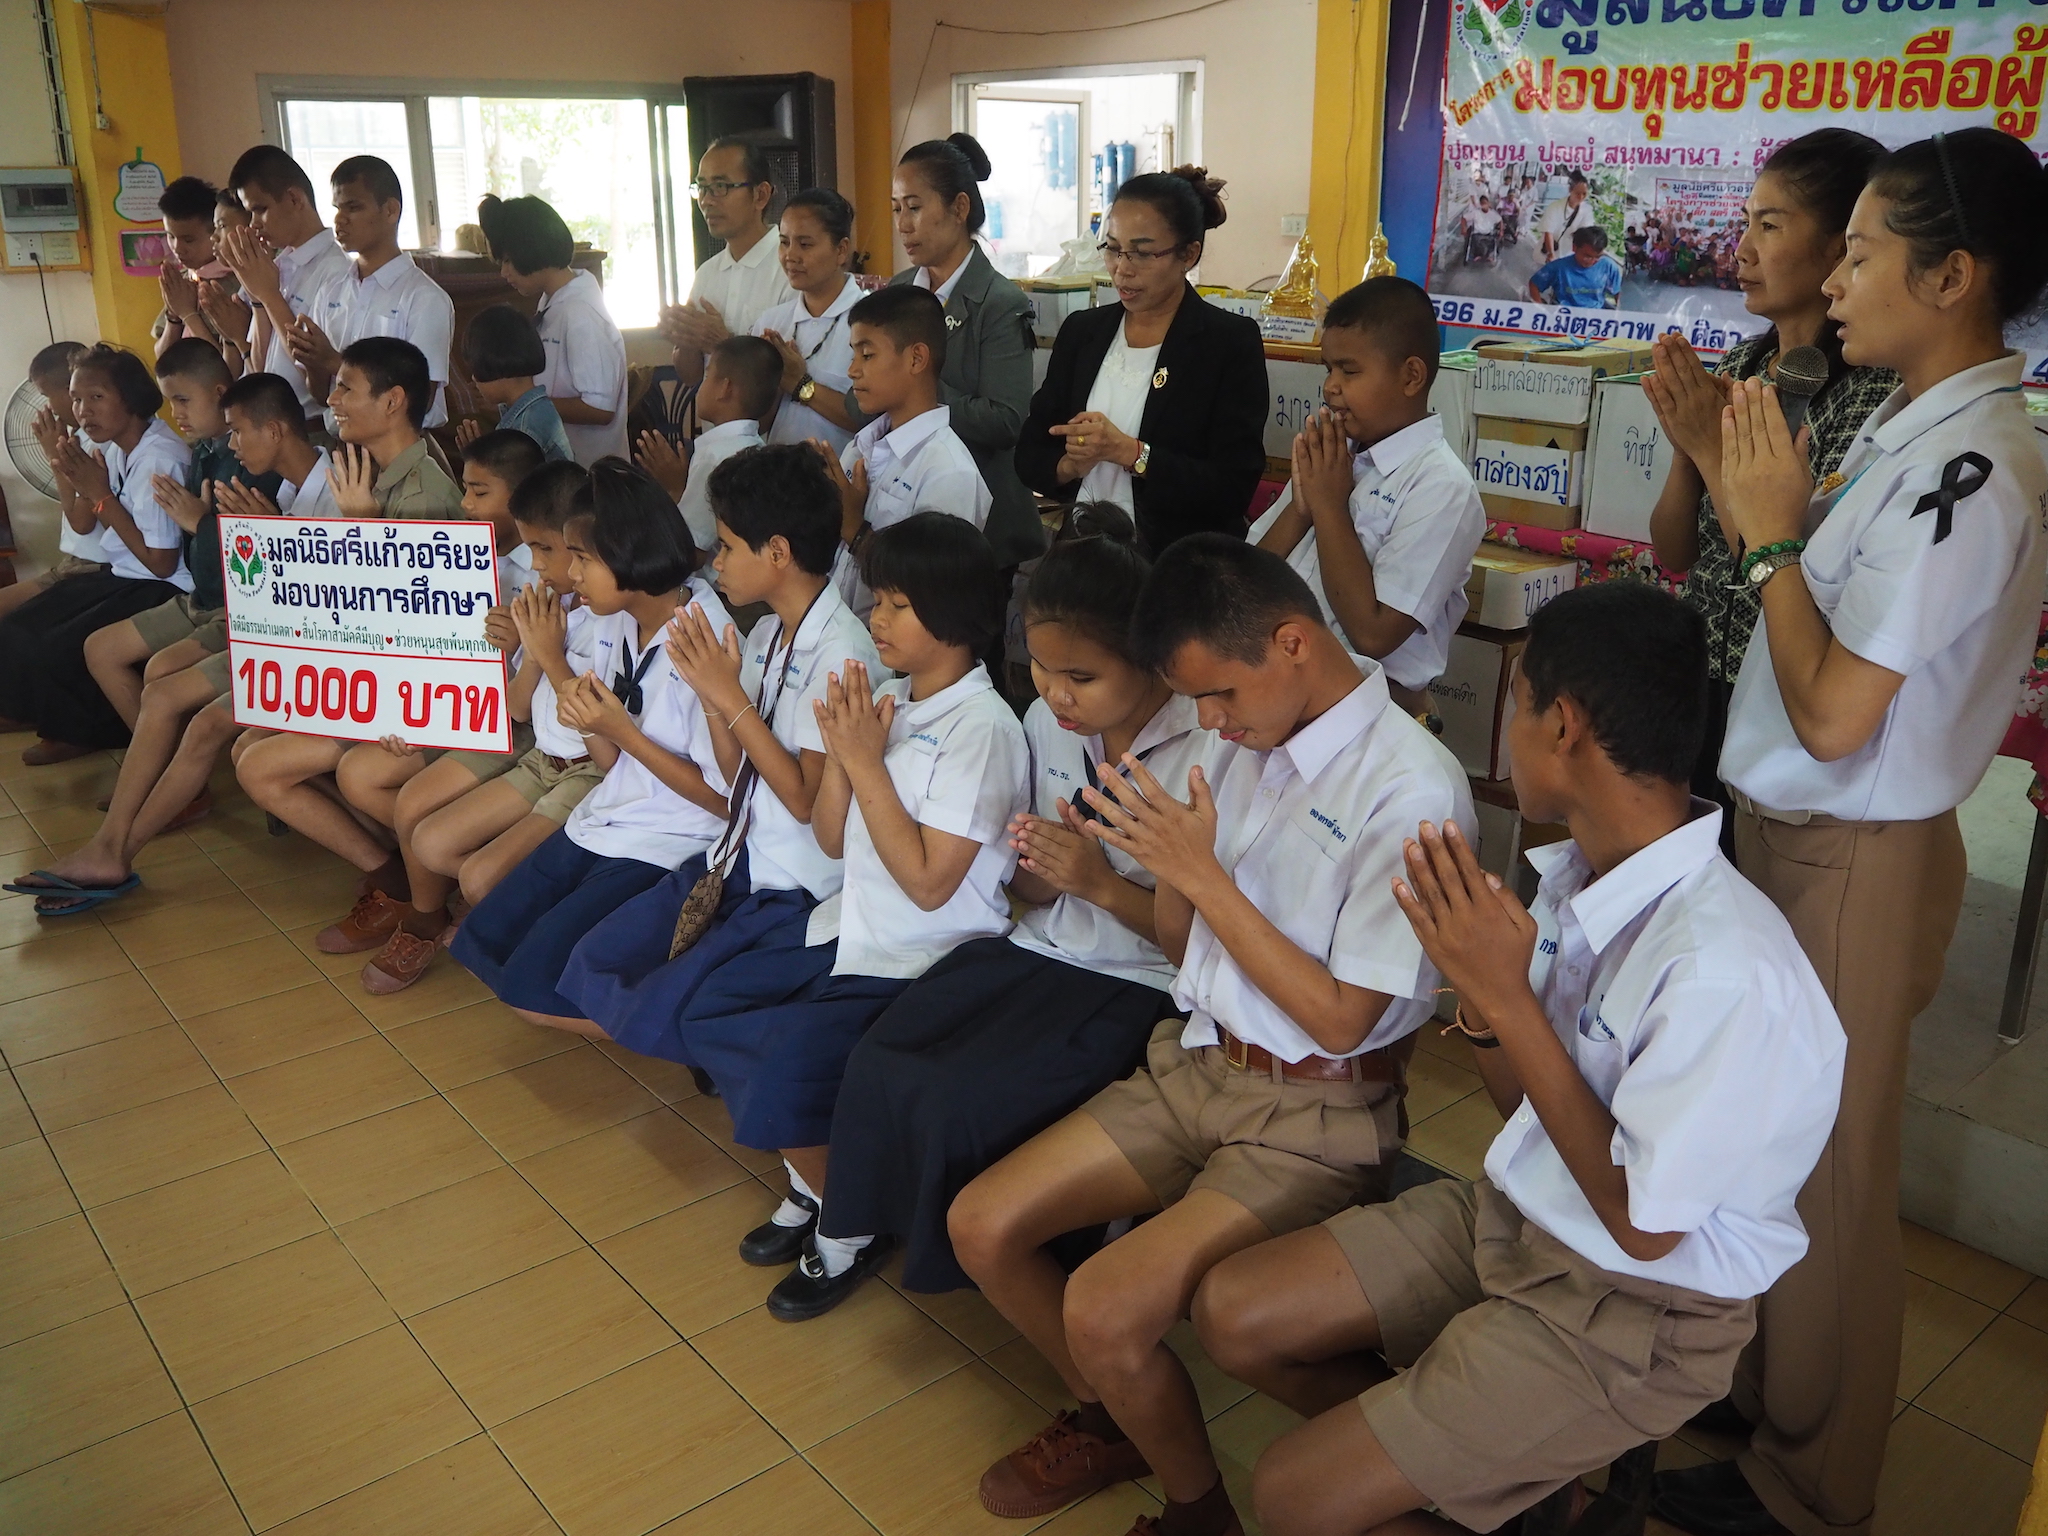 โครงการมอบทุนช่วยเหลือผู้พิการ วันที่  5 มกราคม 2560 ณ โรงเรียนการศึกษาคนตาบอดร้อยเอ็ด ต.ดงลาน อ.เมือง จ.ร้อยเอ็ด